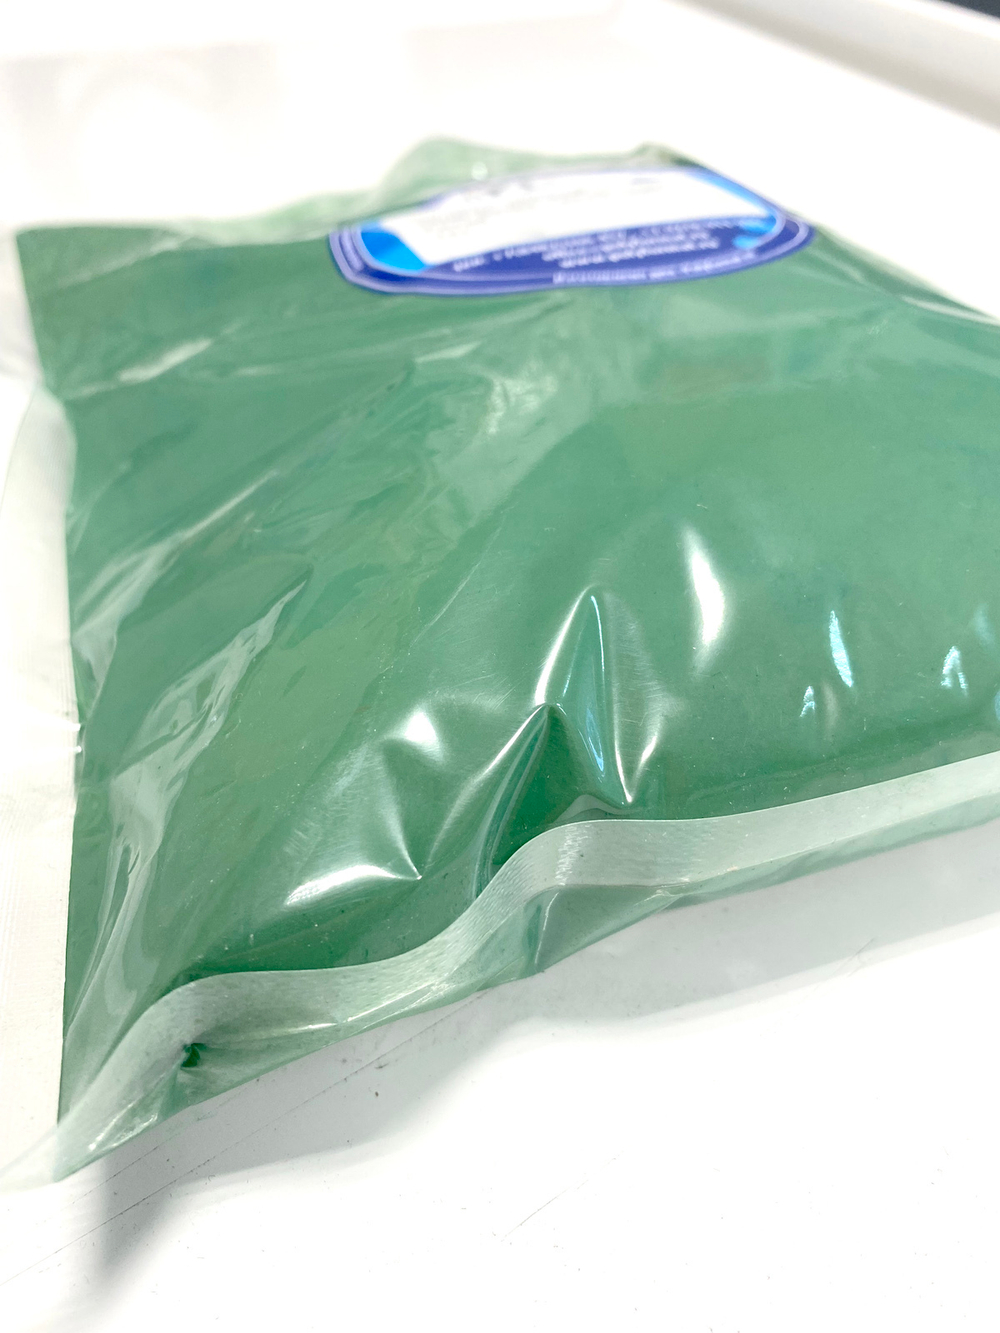 Пигмент зеленый IRON OXIDE GREEN 5605, 1 кг